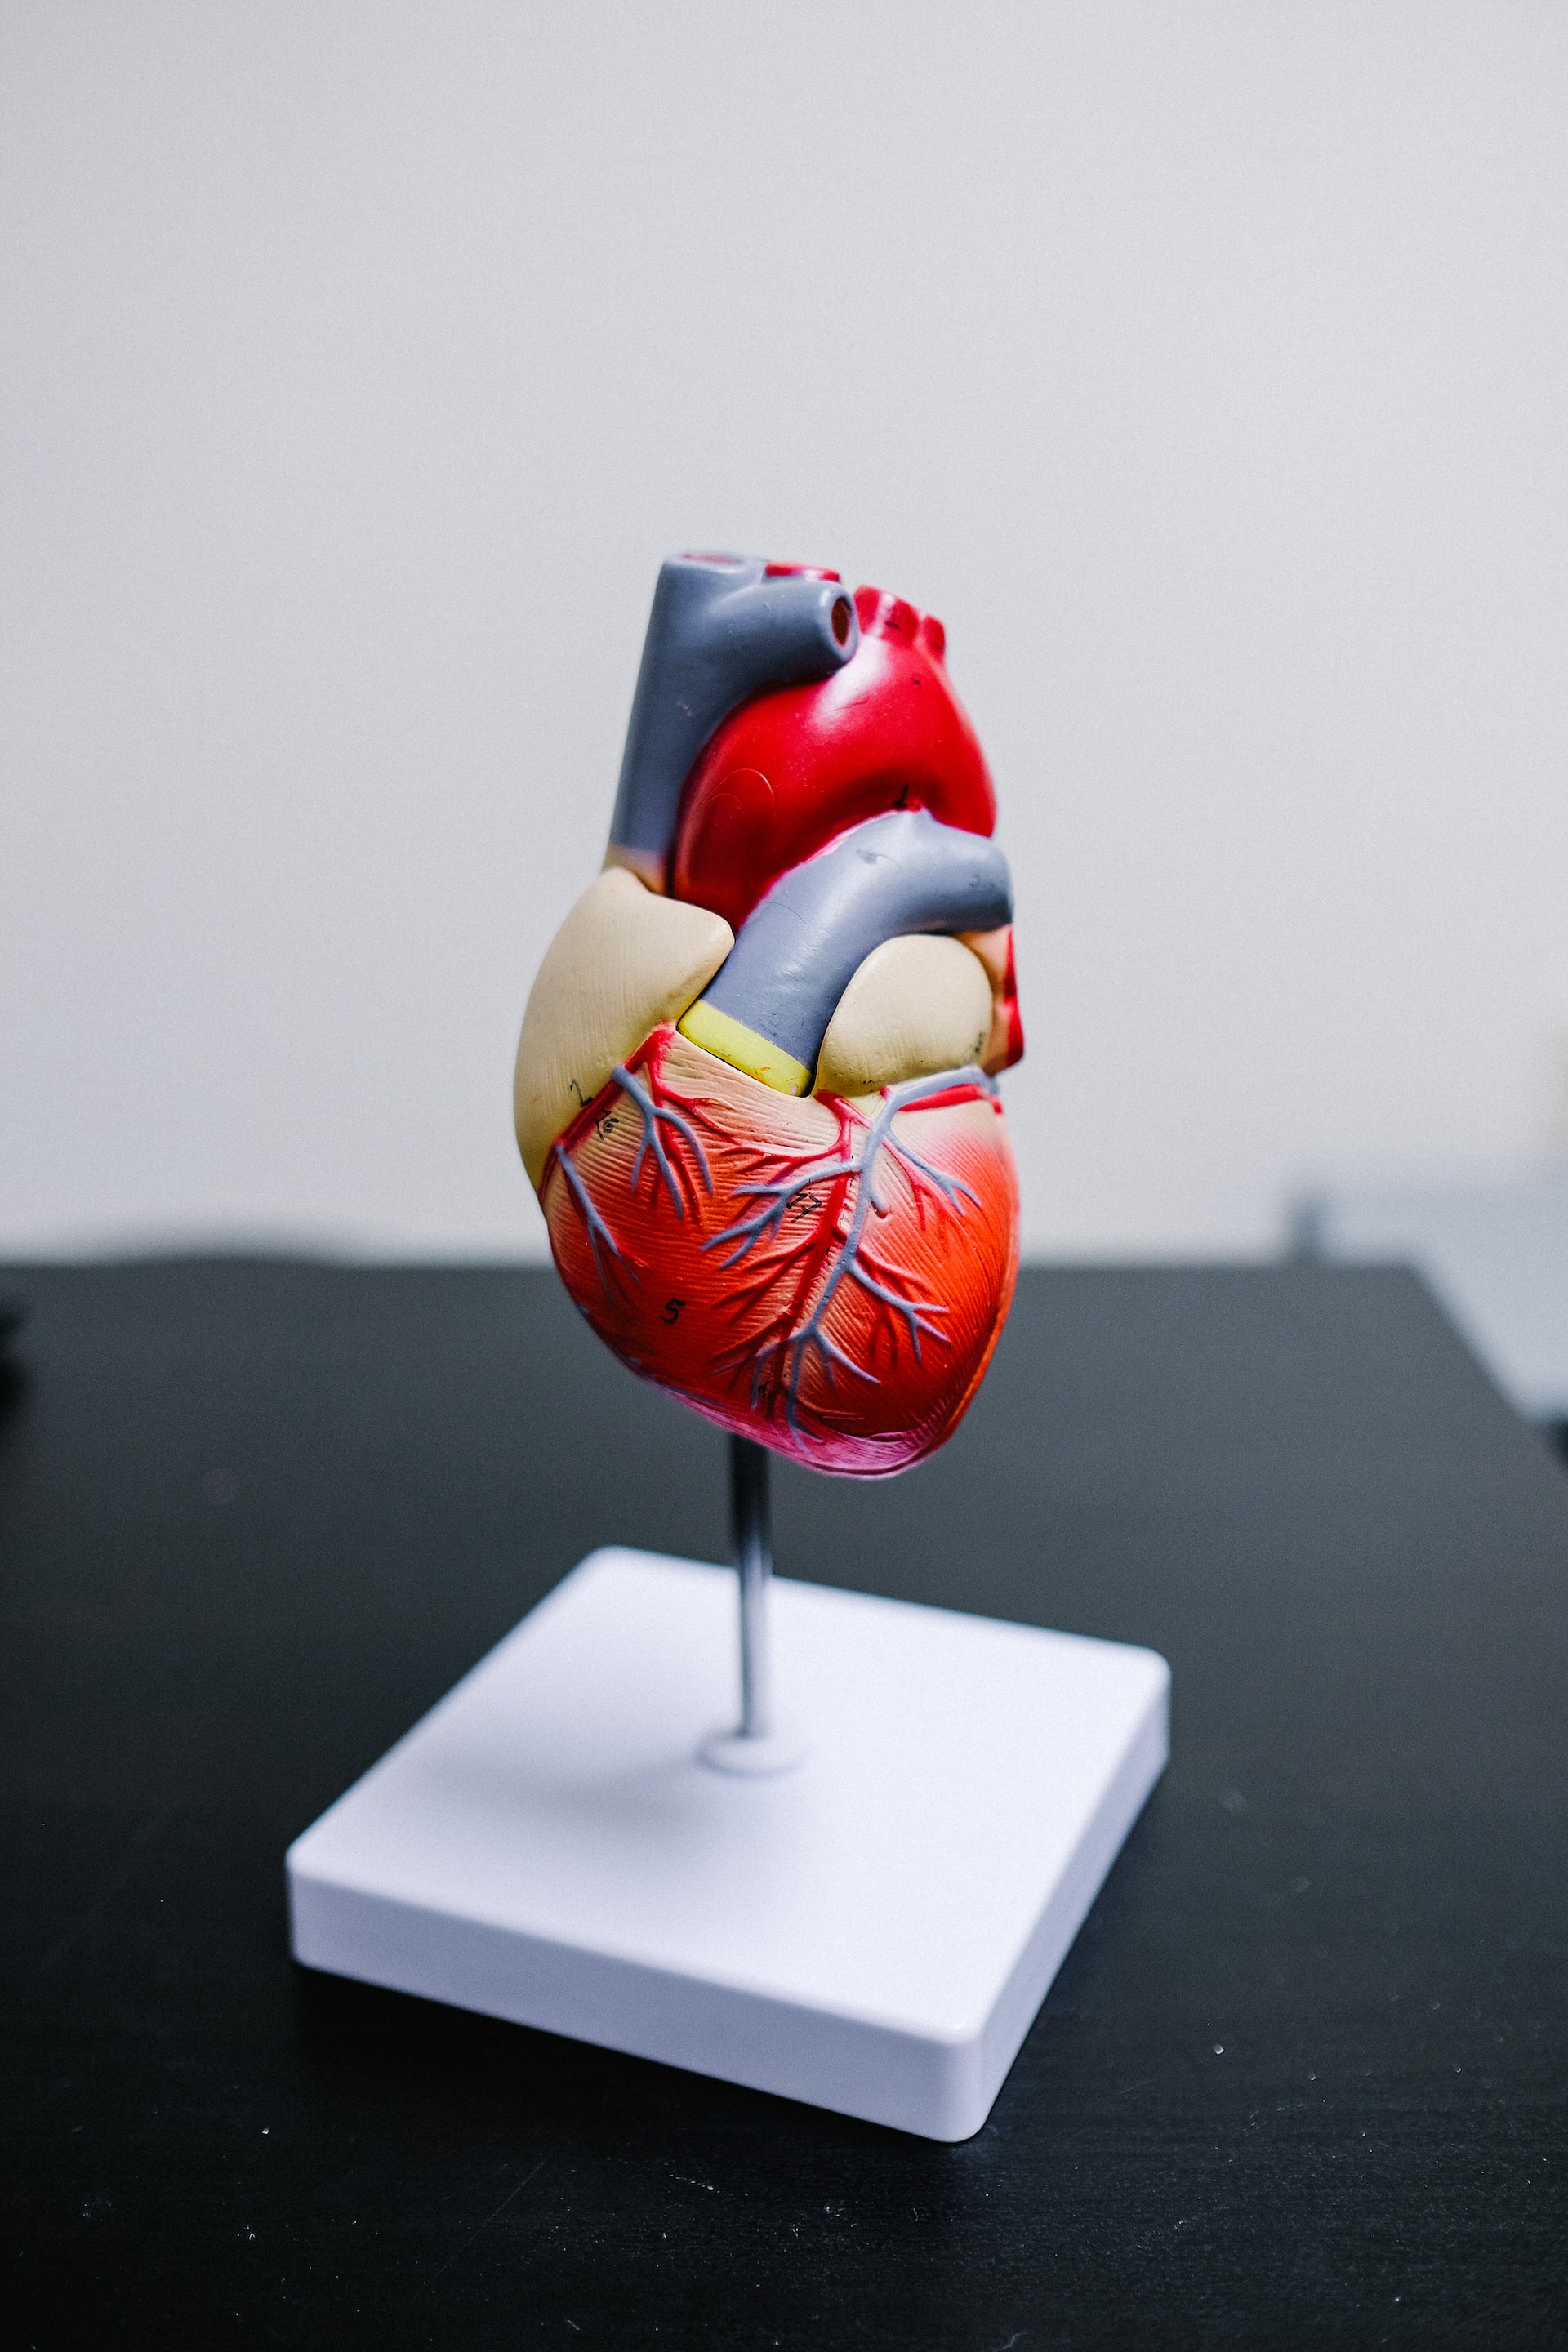 Modell eines Herzens mit Arterien